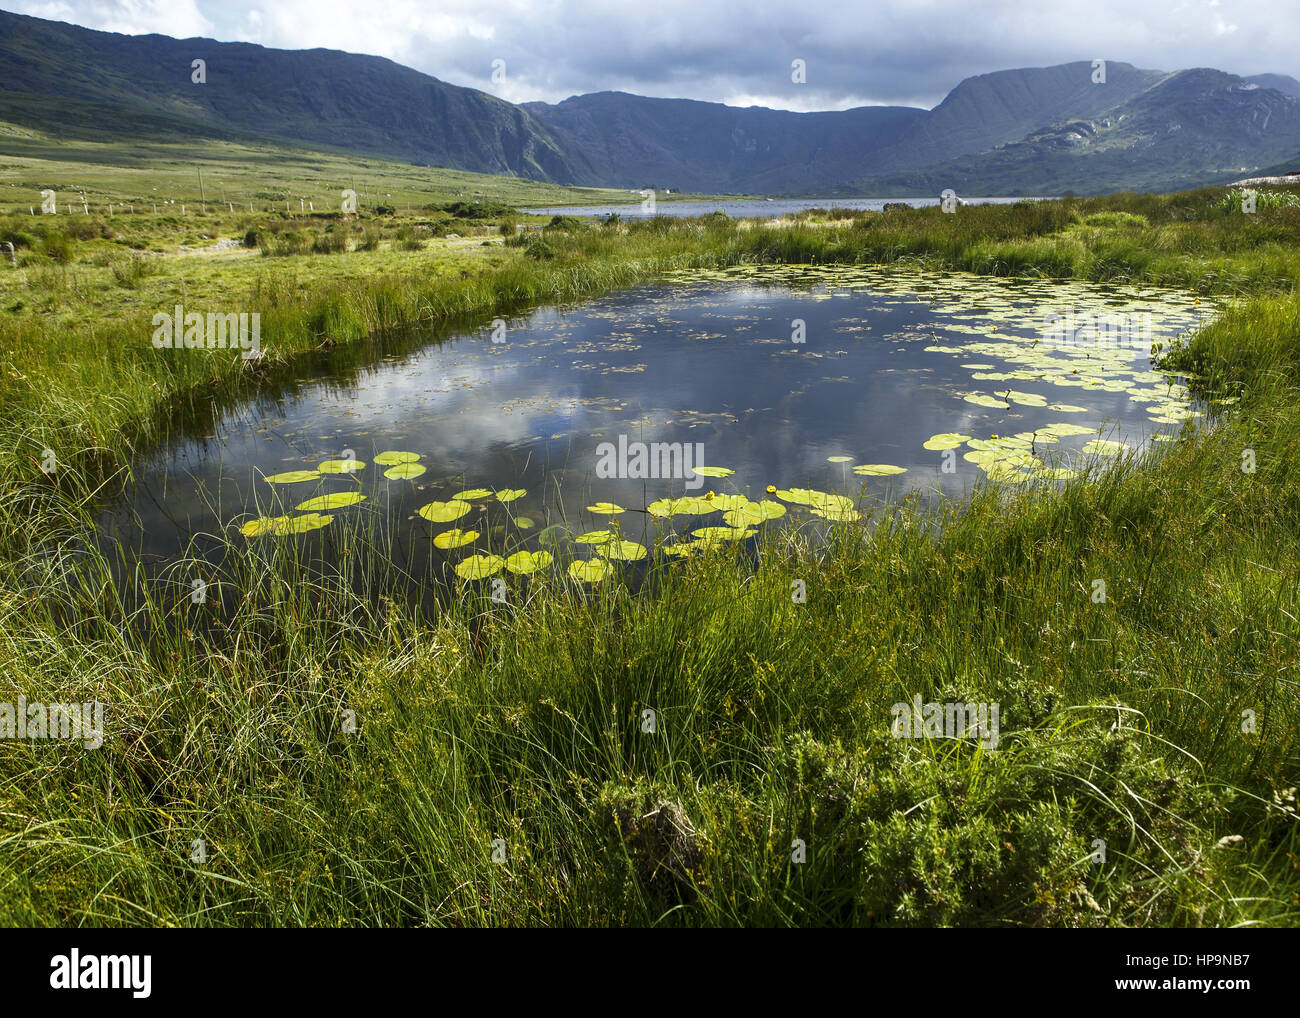 Irland, Teich in Seenlandschaft Stock Photo